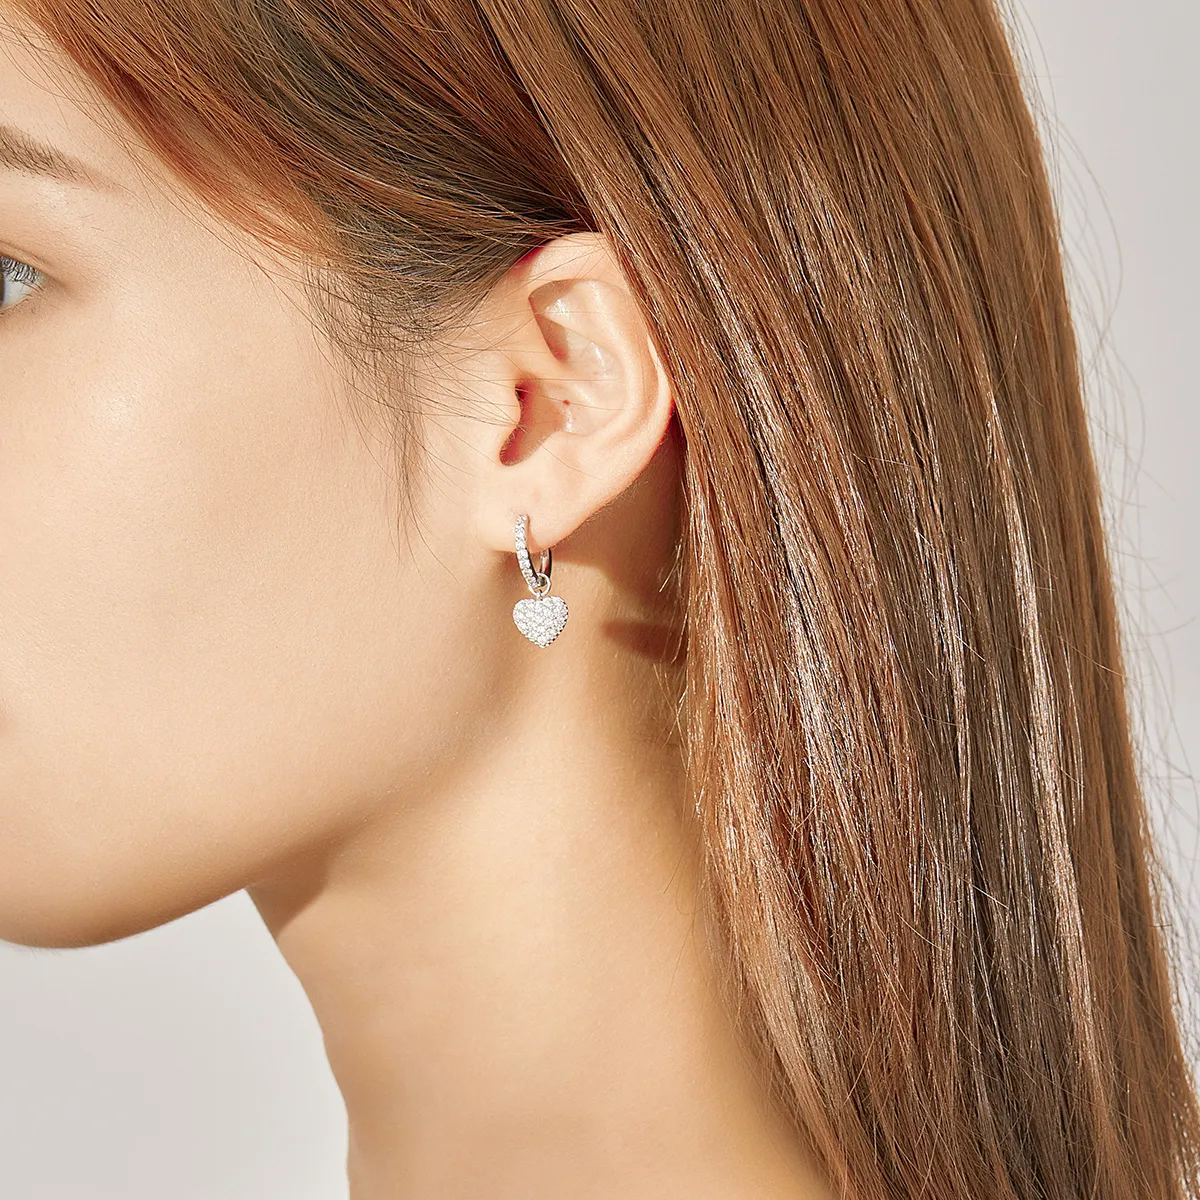 Pandora Style Silver Heart Shape Dangle Earrings - SCE821